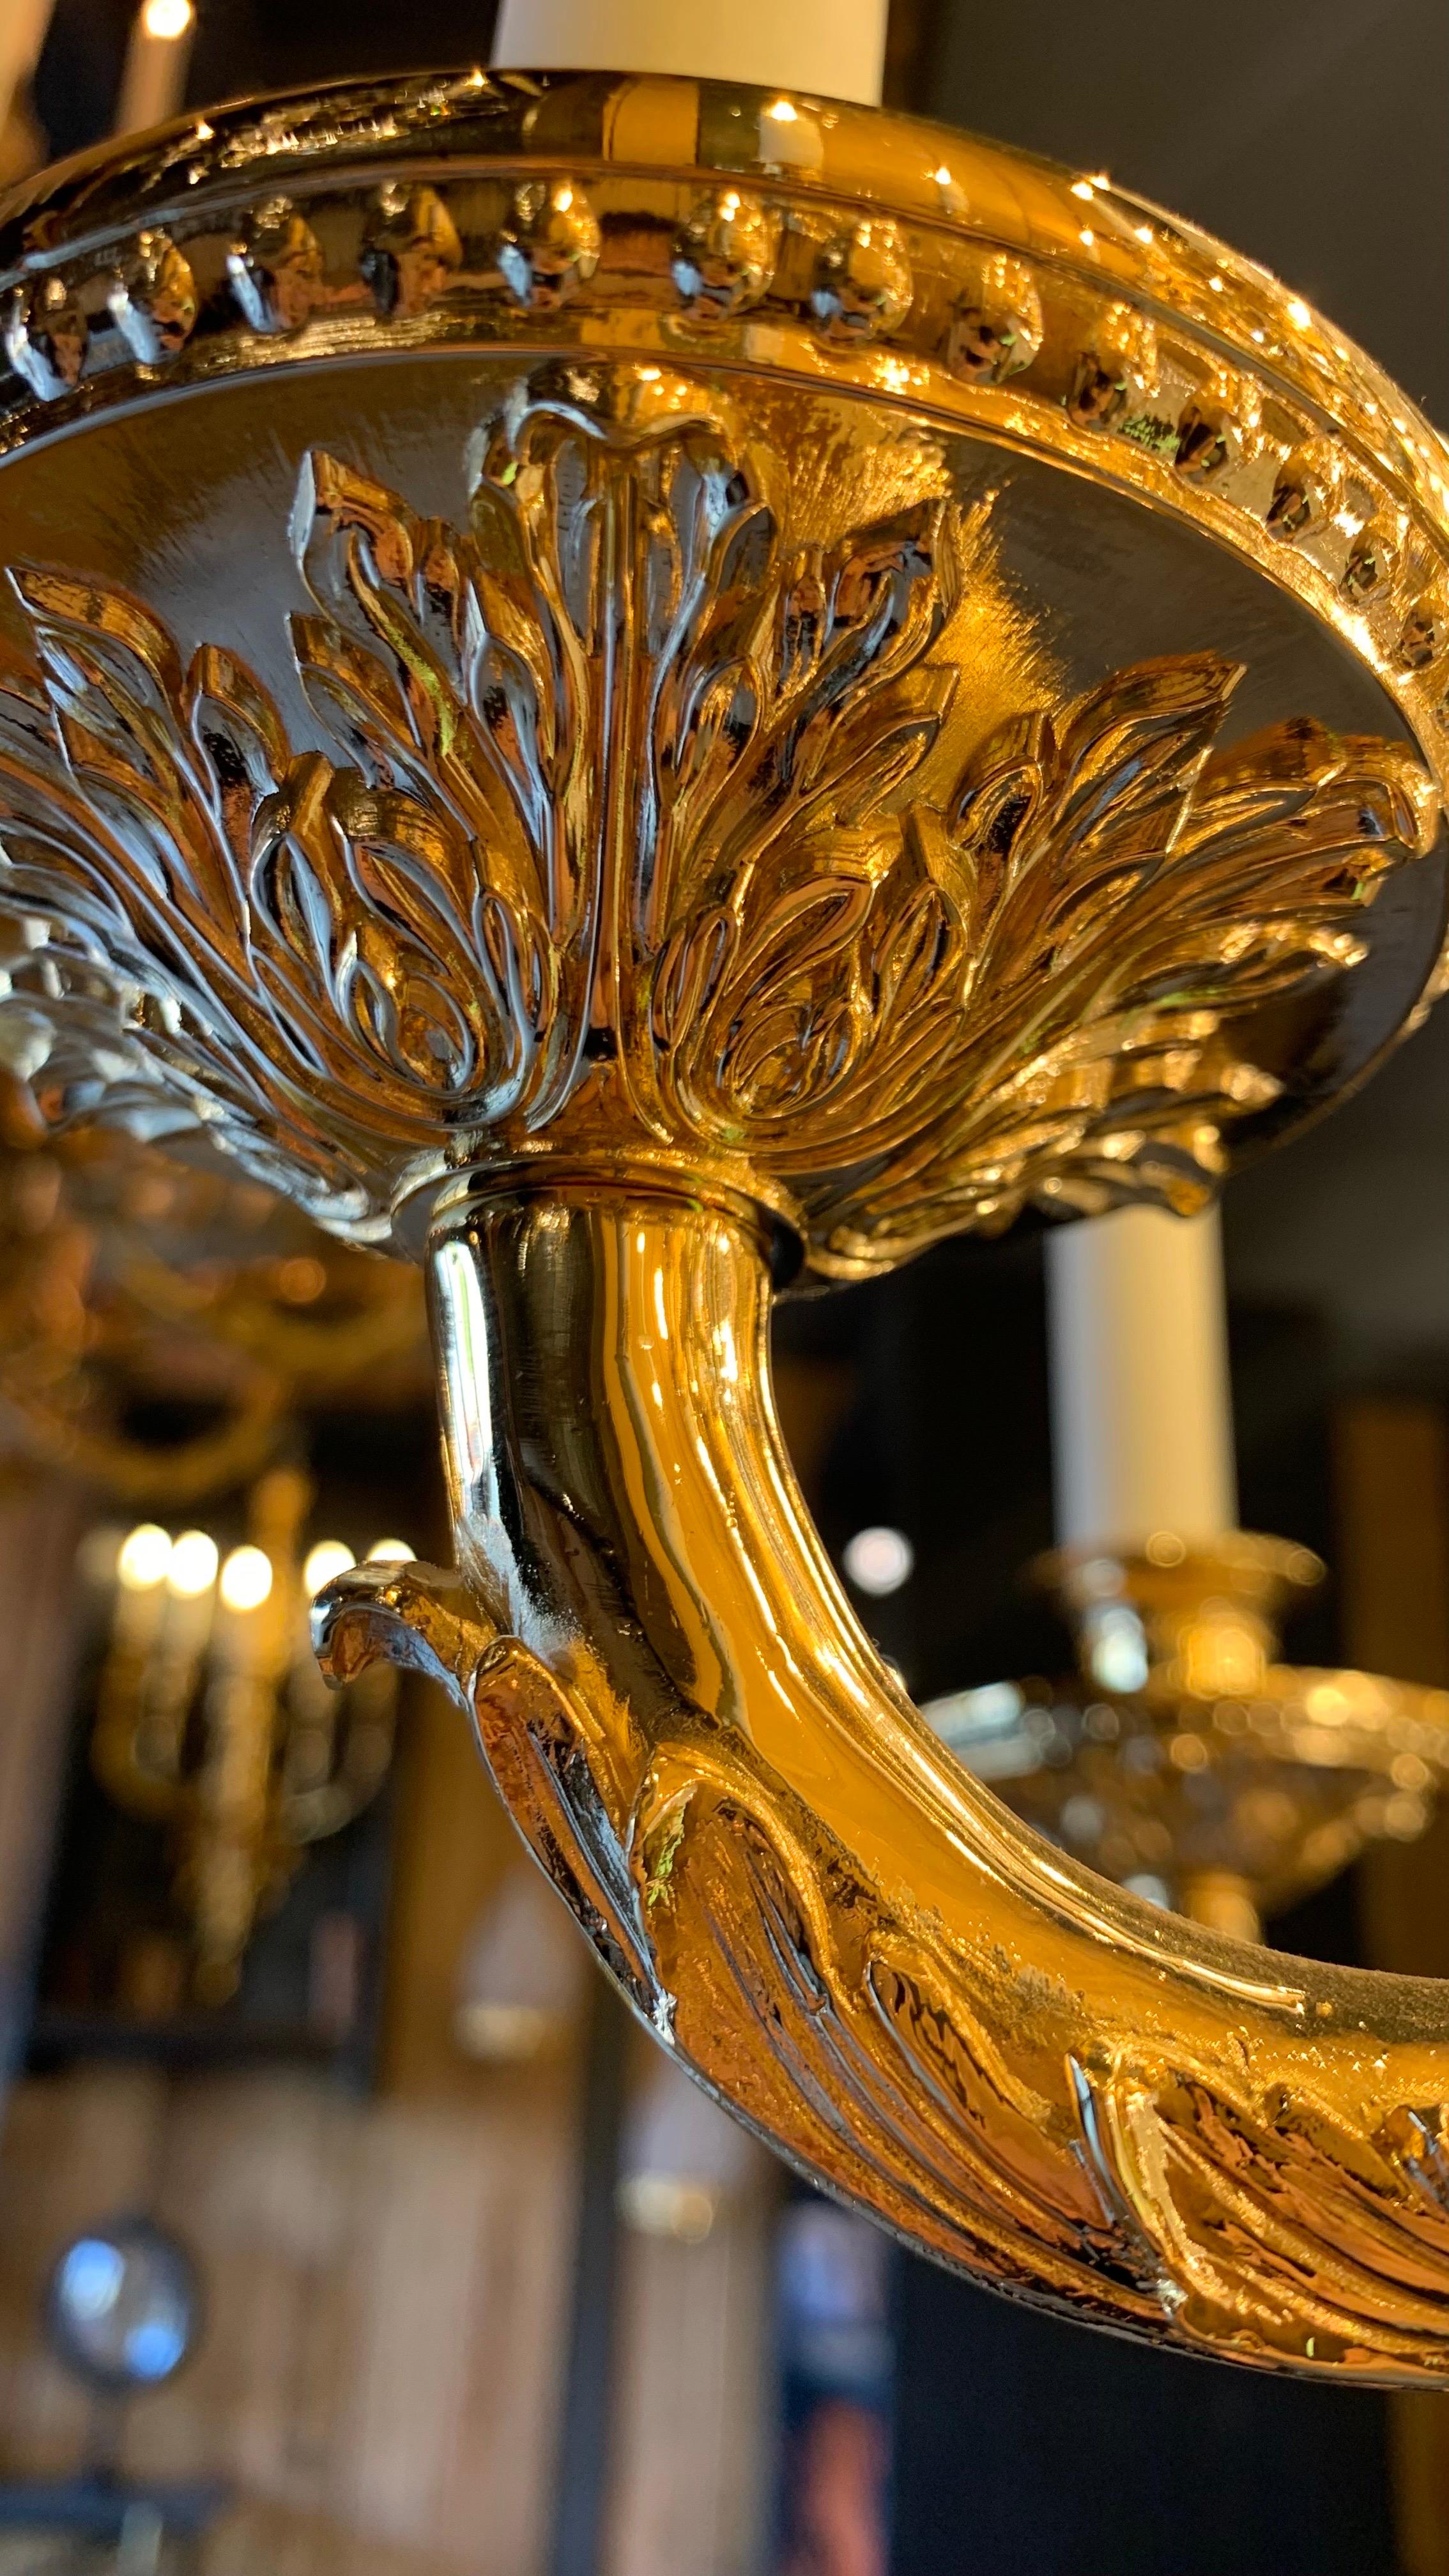 Prächtiger Kronleuchter in Form eines Korbes im Stil von Napoleon III. mit 36 Lichtern aus 24-karätiger vergoldeter Bronze, viele Kristalltropfen verleihen ihm eine prächtige Wirkung.
Wir haben einen Kronleuchter auf Lager, können ihn aber auch